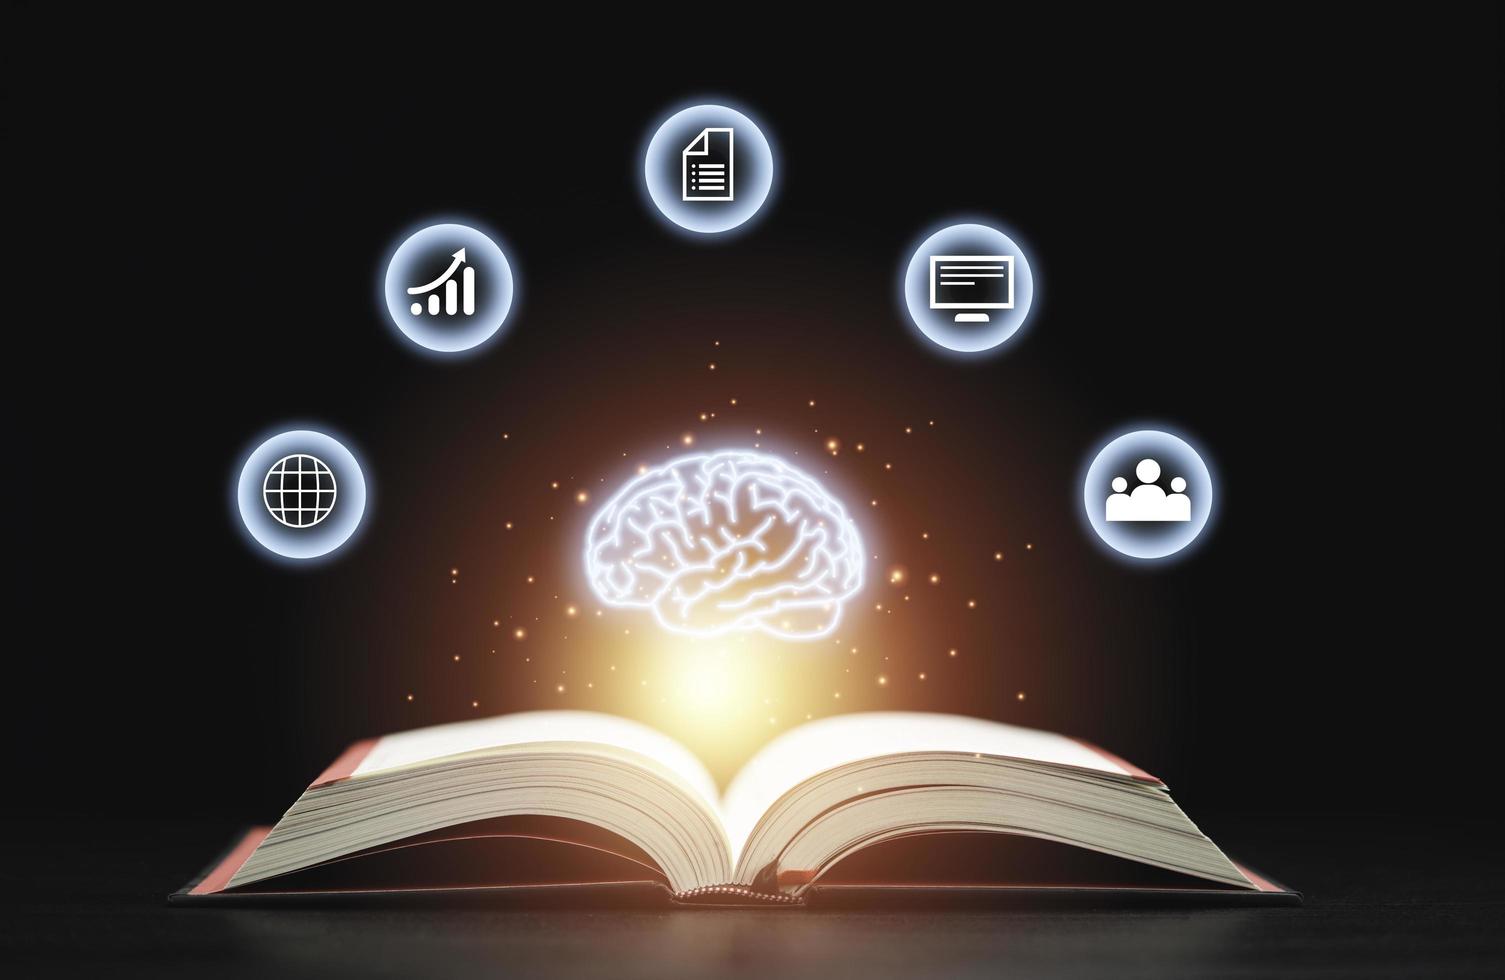 el cerebro virtual brillante flota sobre un libro abierto con iconos inclinados sobre fondo oscuro que es un símbolo de estudio, un conocimiento ayudará a resolver el problema y el concepto de solución. foto